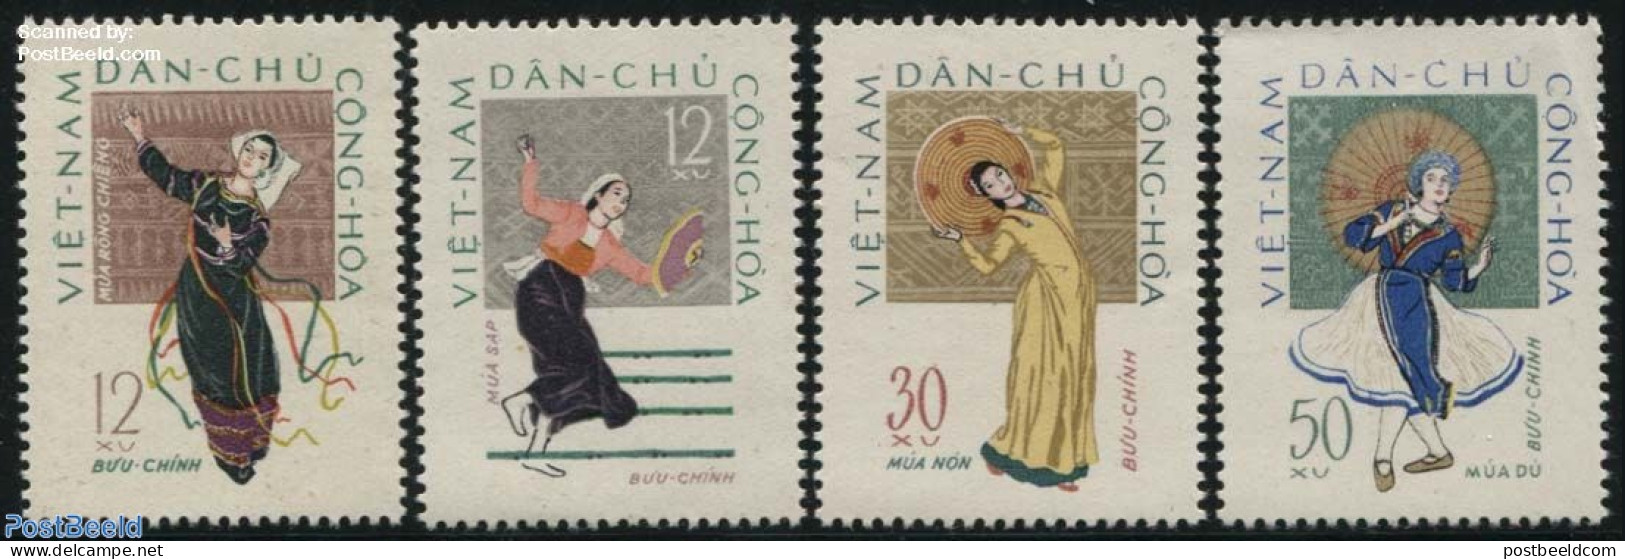 Vietnam 1962 Folk Dancing 4v, Mint NH, Performance Art - Dance & Ballet - Tanz